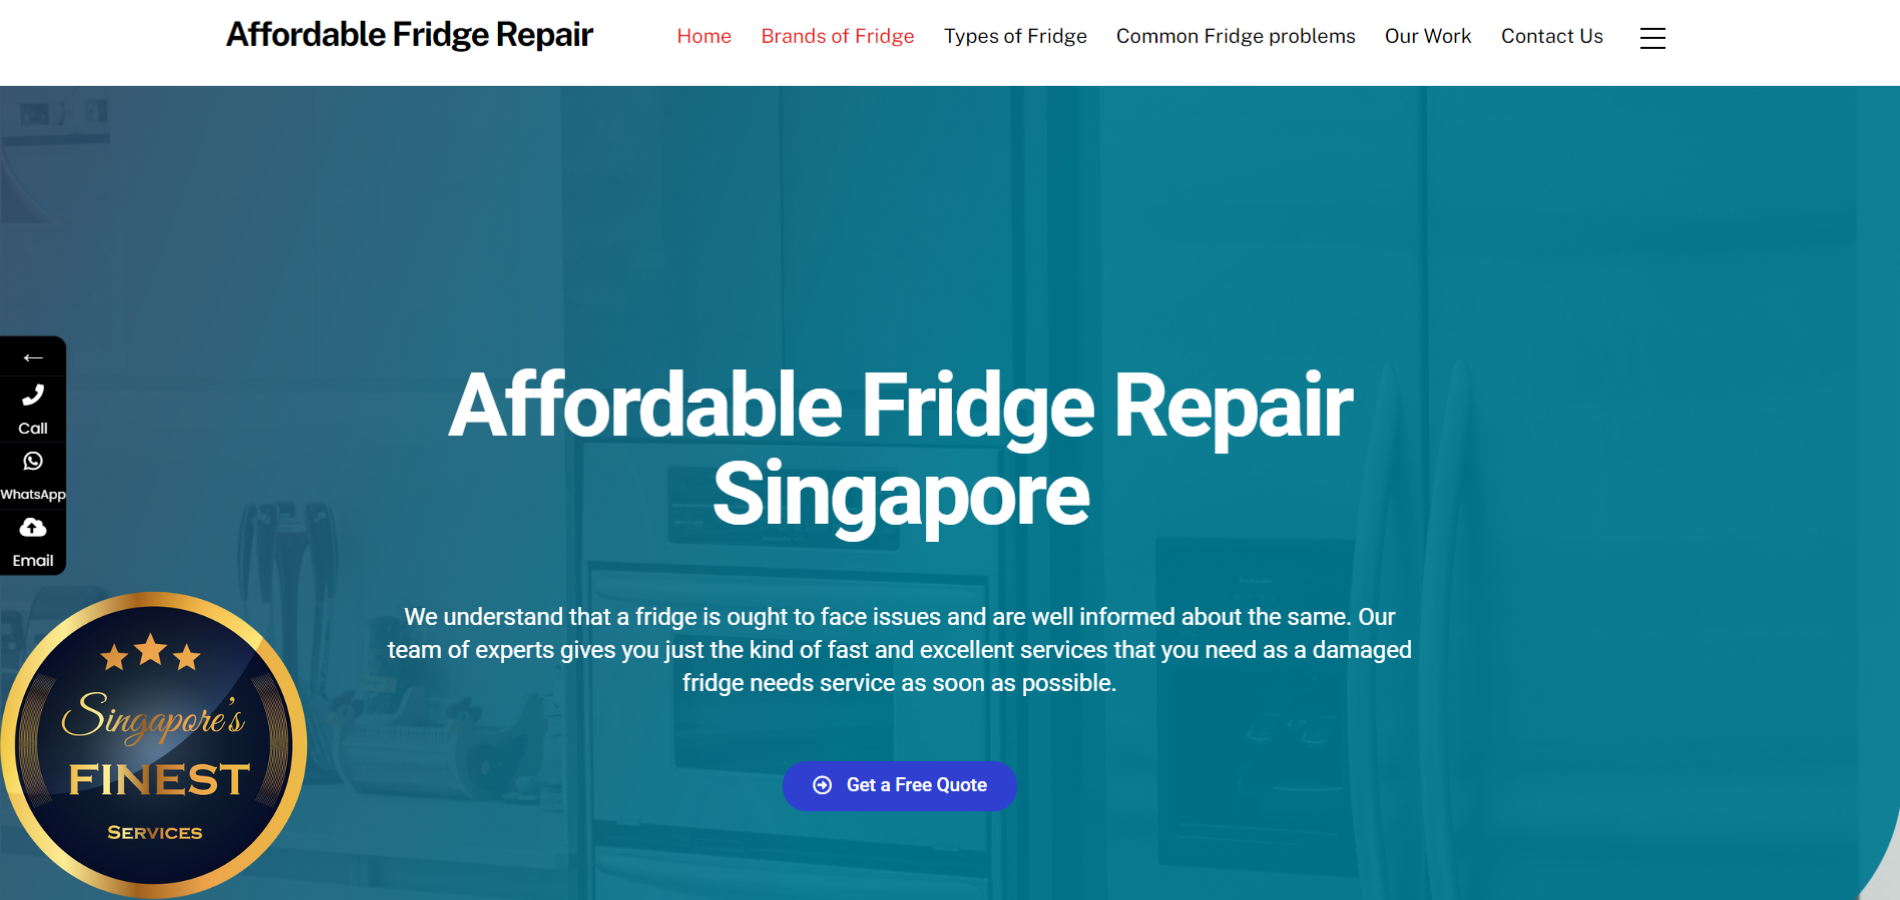 The Finest Fridge Repair Service in Singapore